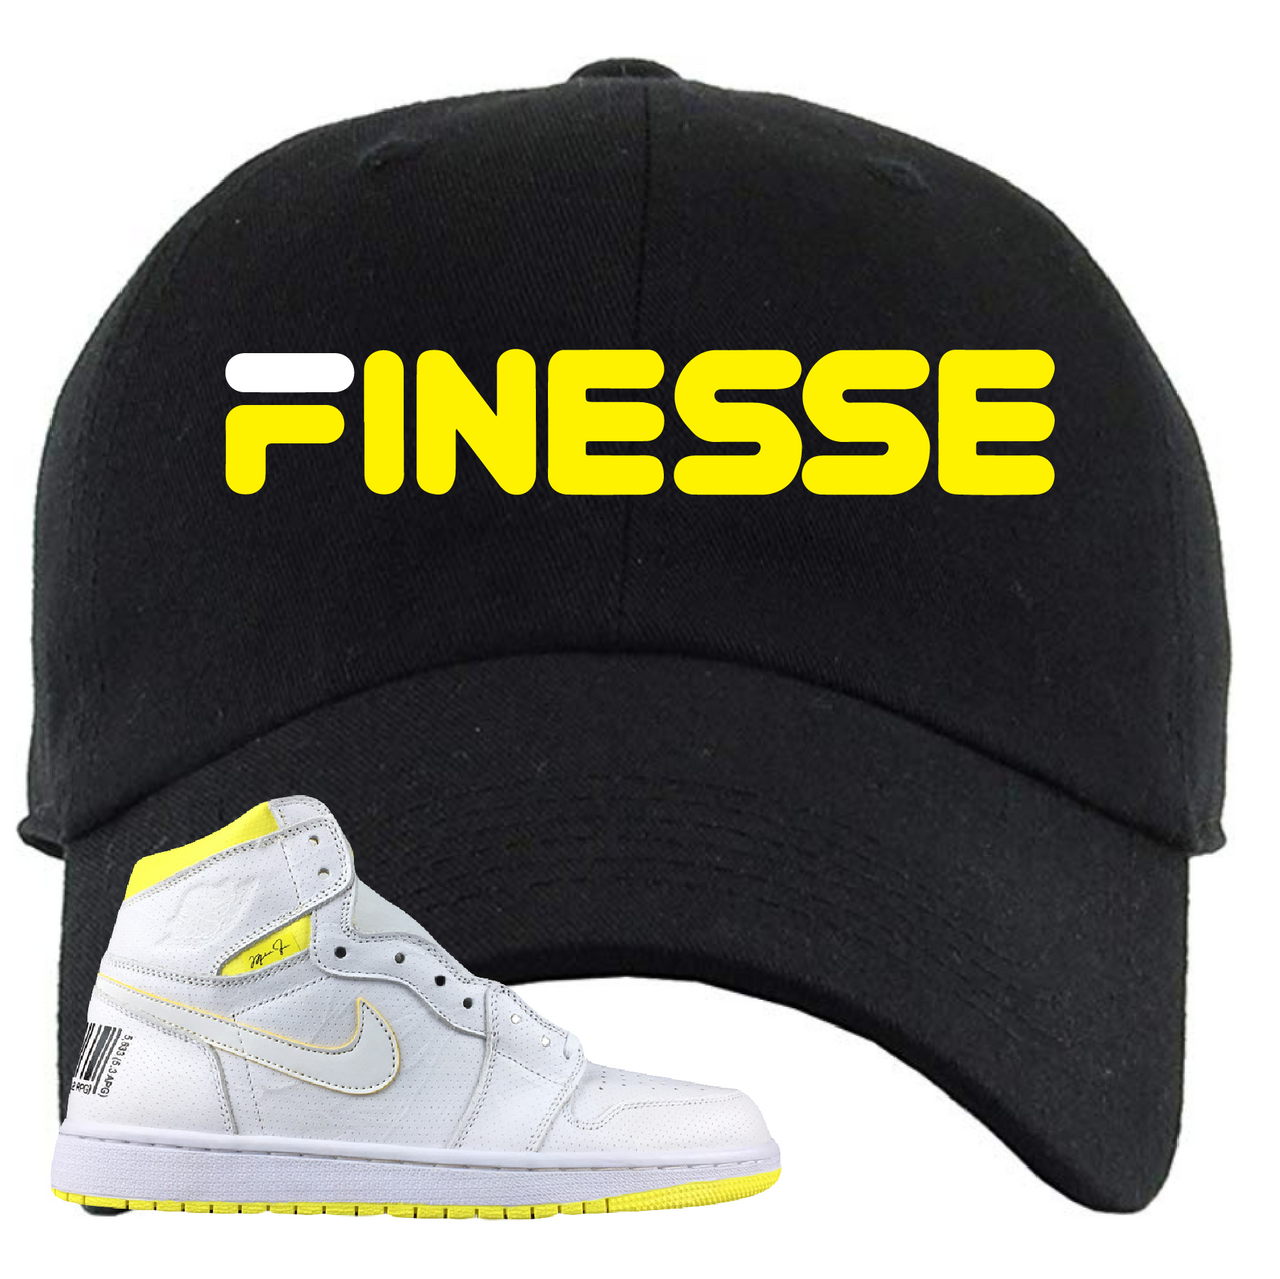 Jordan 1 First Class Flight Finesse Sneaker Matching Black Dad Hat